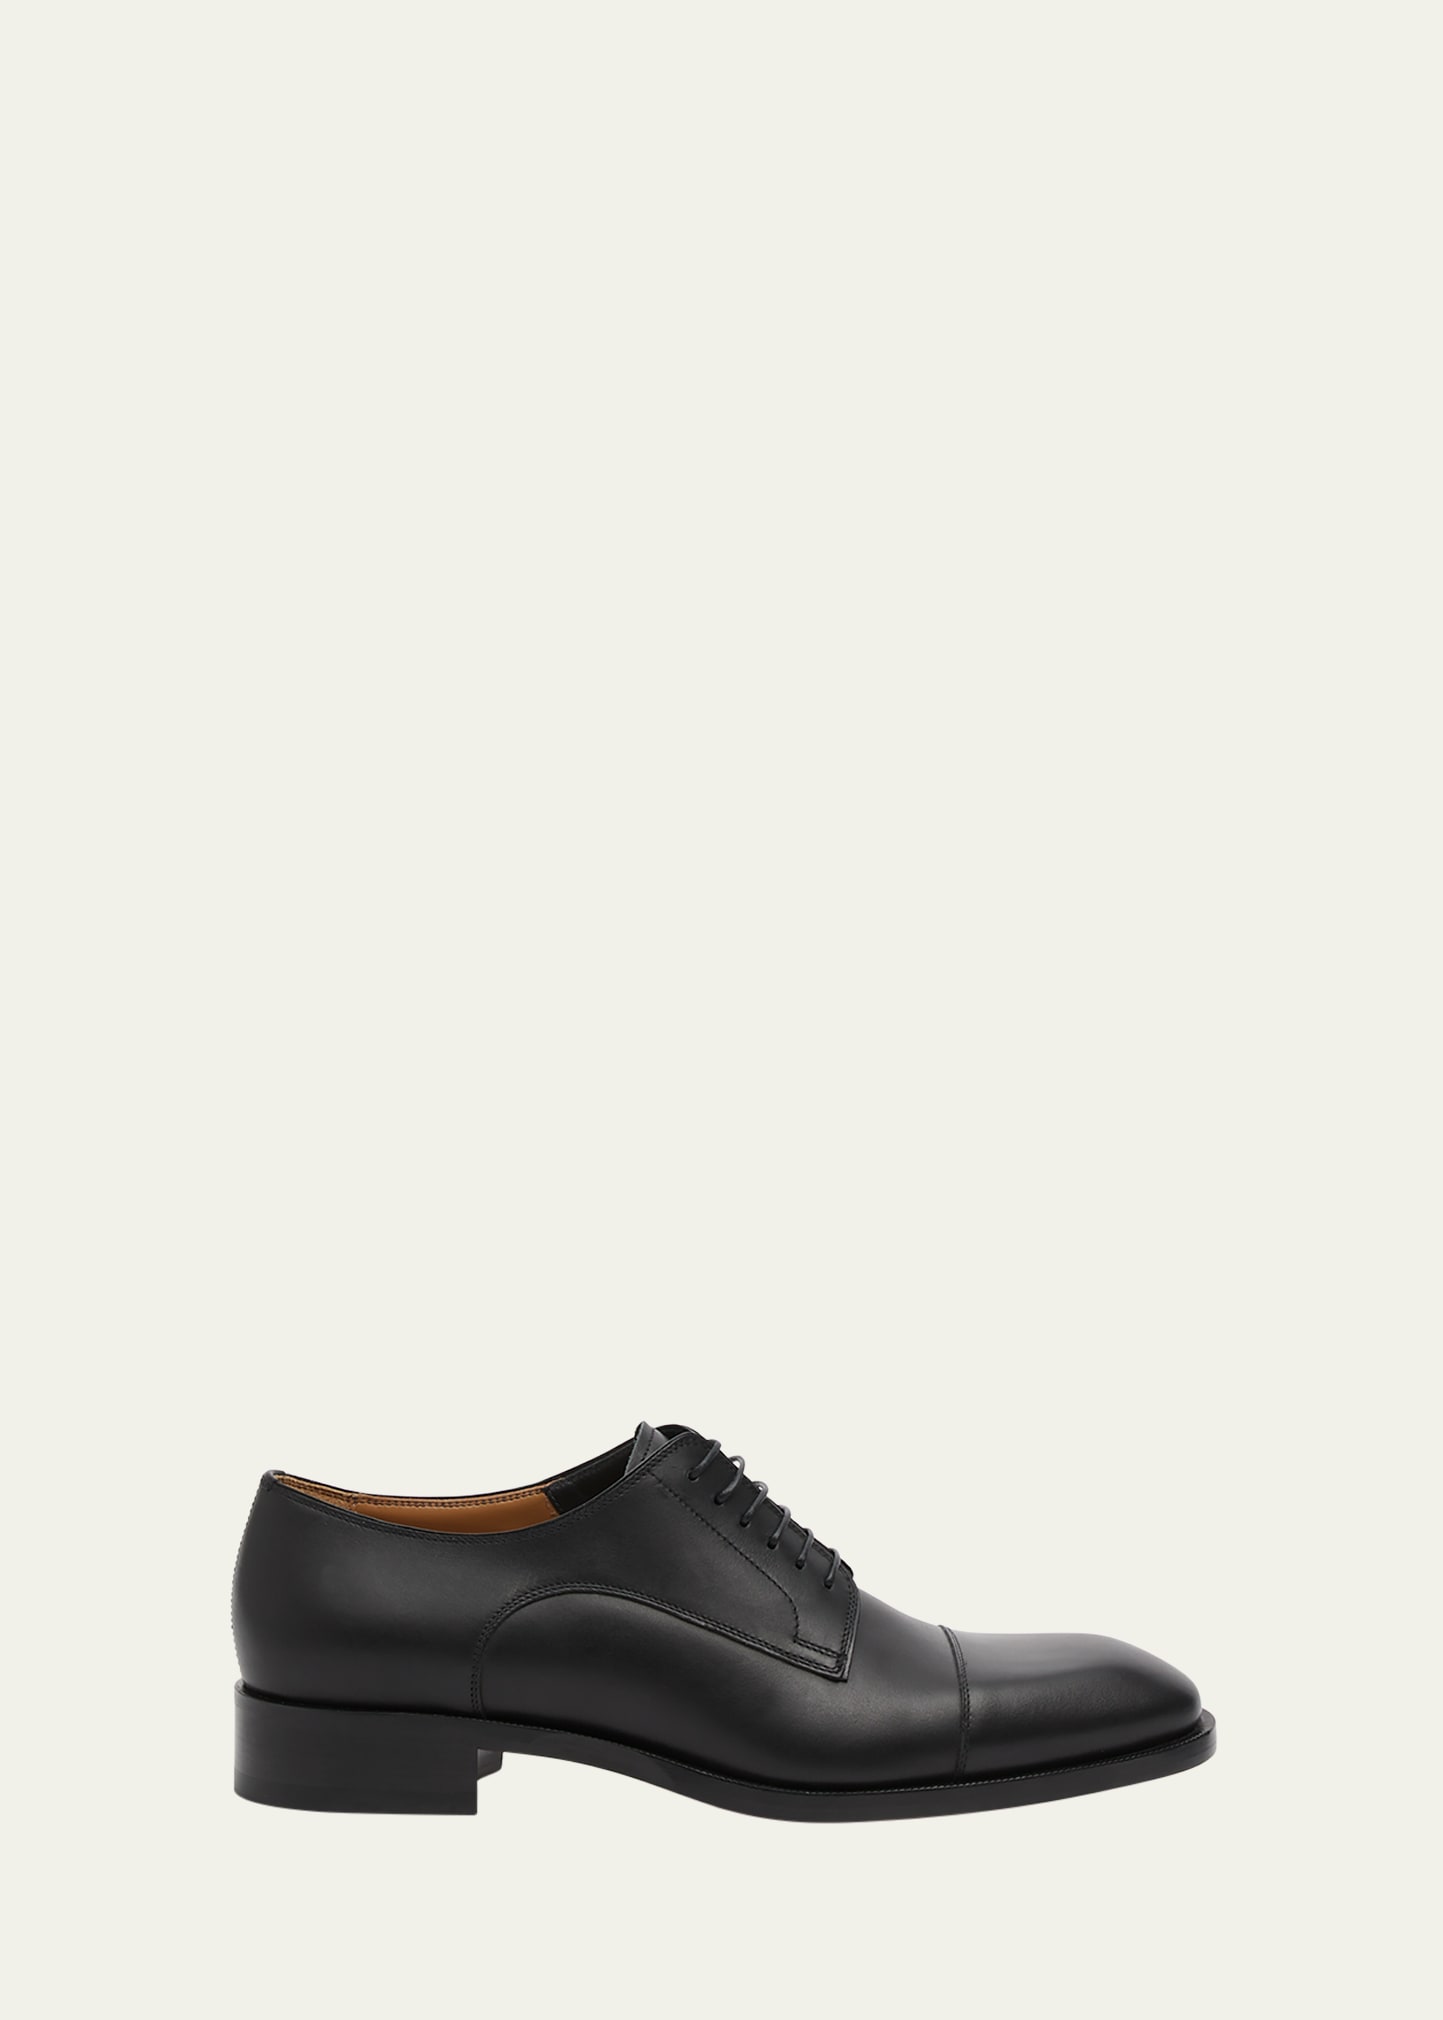 Men's Cortomale Calf Leather Oxfords